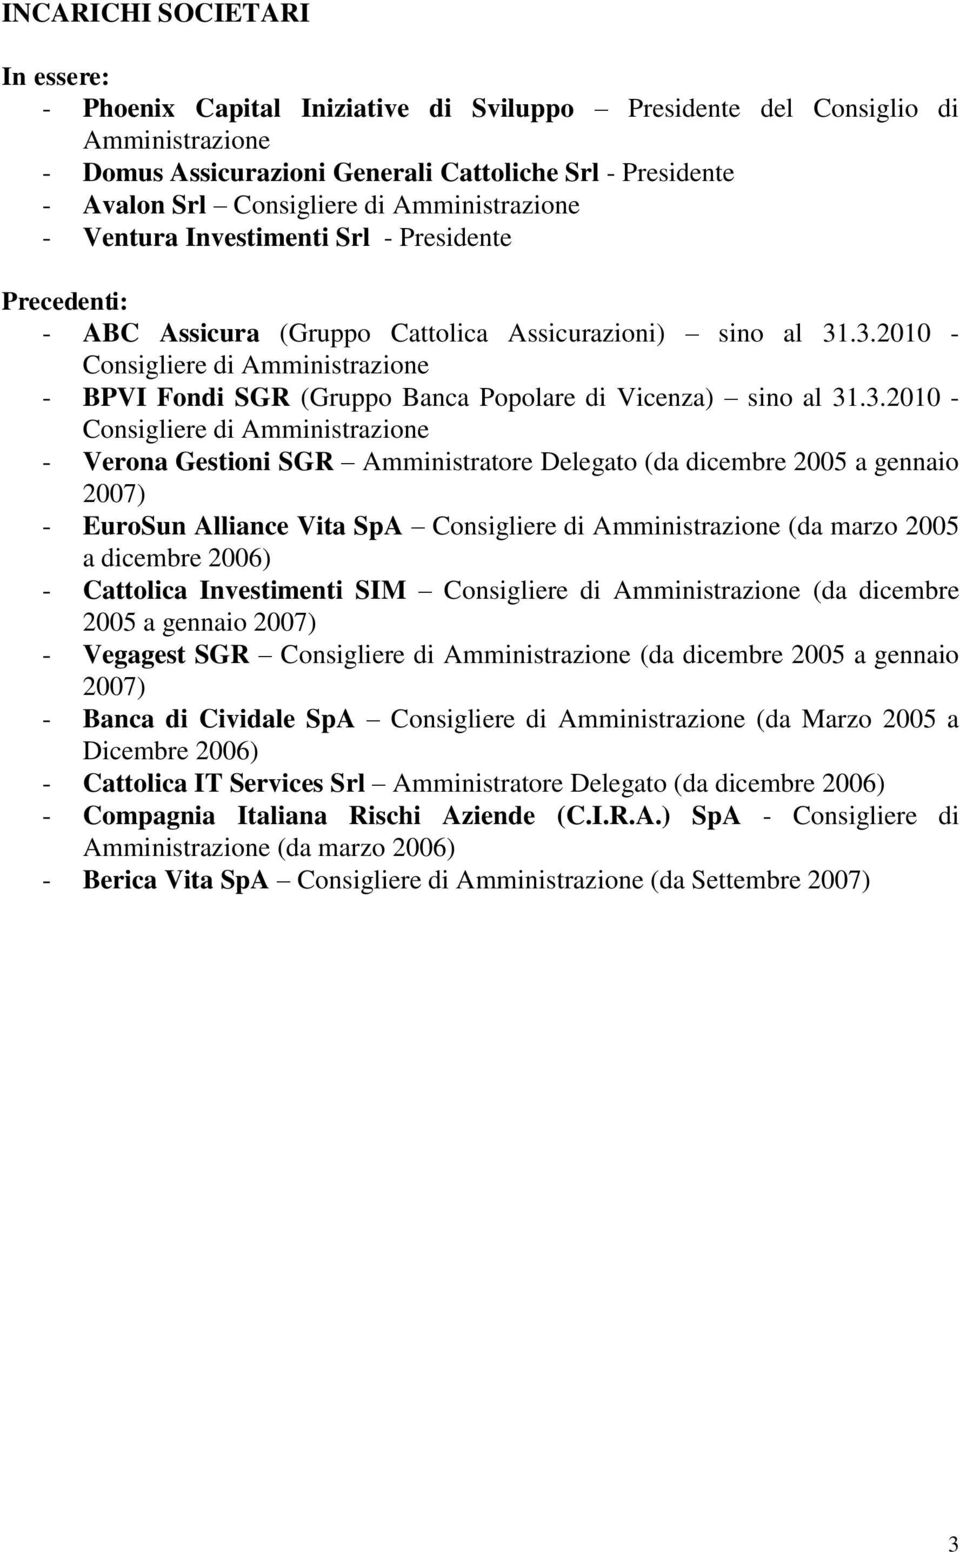 .3.2010 - - BPVI Fondi SGR (Gruppo Banca Popolare di Vicenza) sino al 31.3.2010 - - Verona Gestioni SGR Amministratore Delegato (da dicembre 2005 a gennaio 2007) - EuroSun Alliance Vita SpA (da marzo